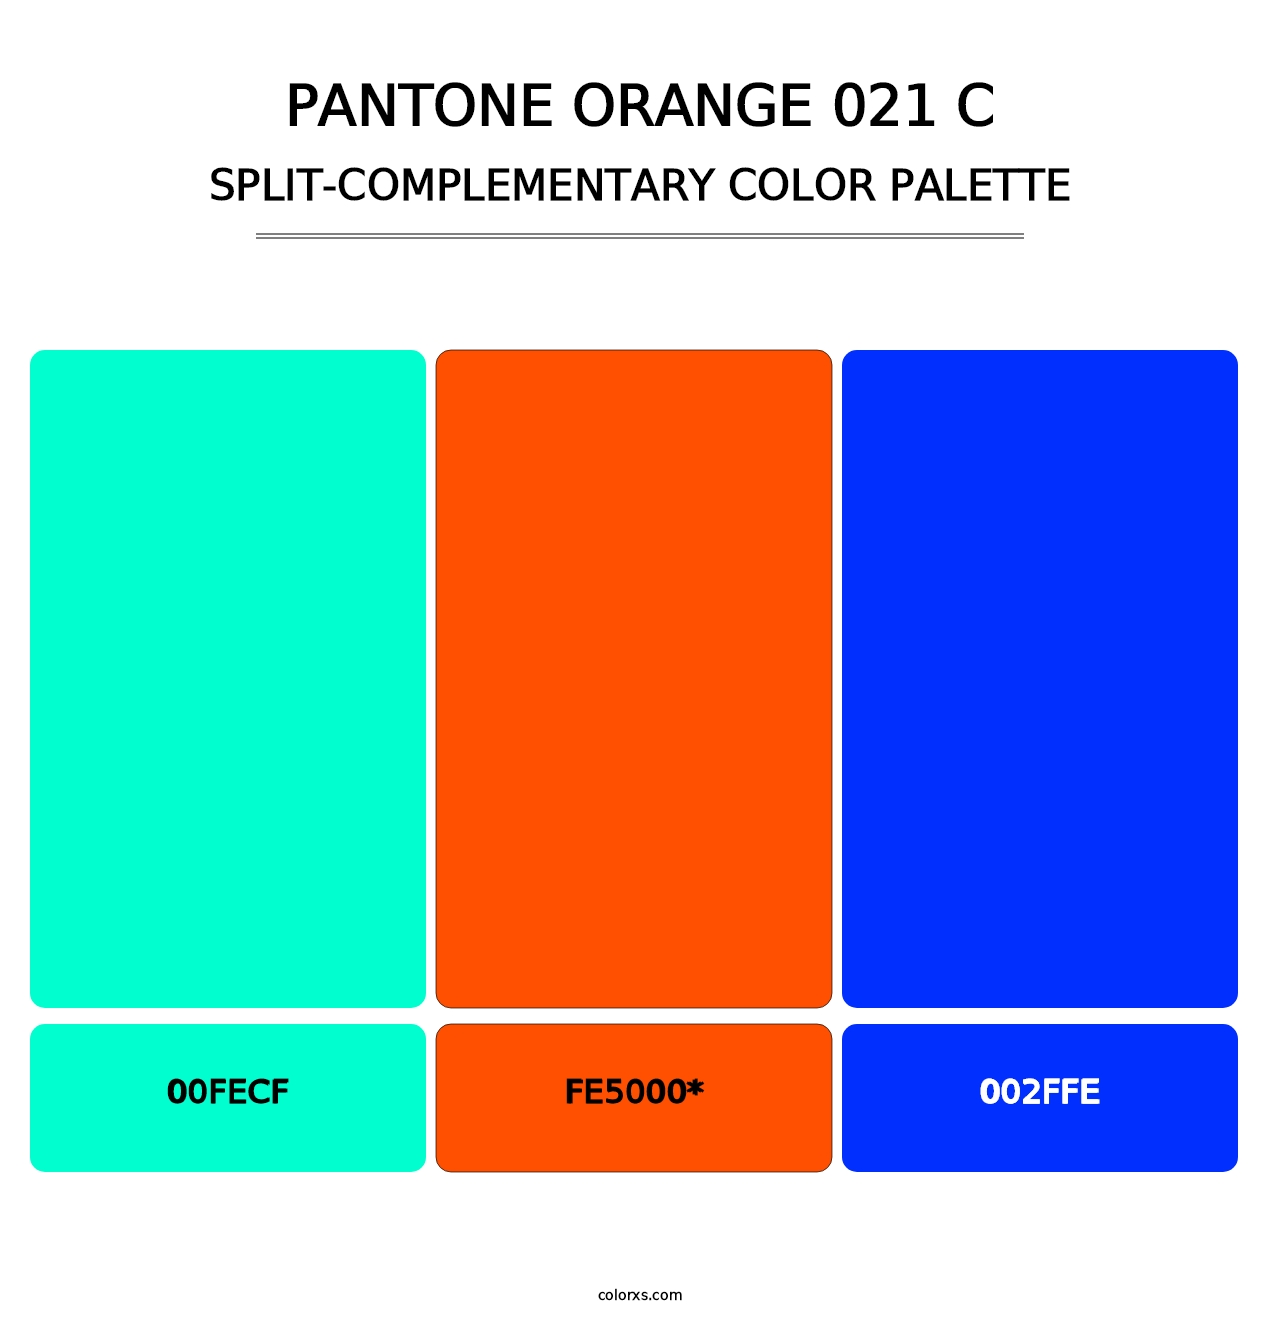 PANTONE Orange 021 C - Split-Complementary Color Palette